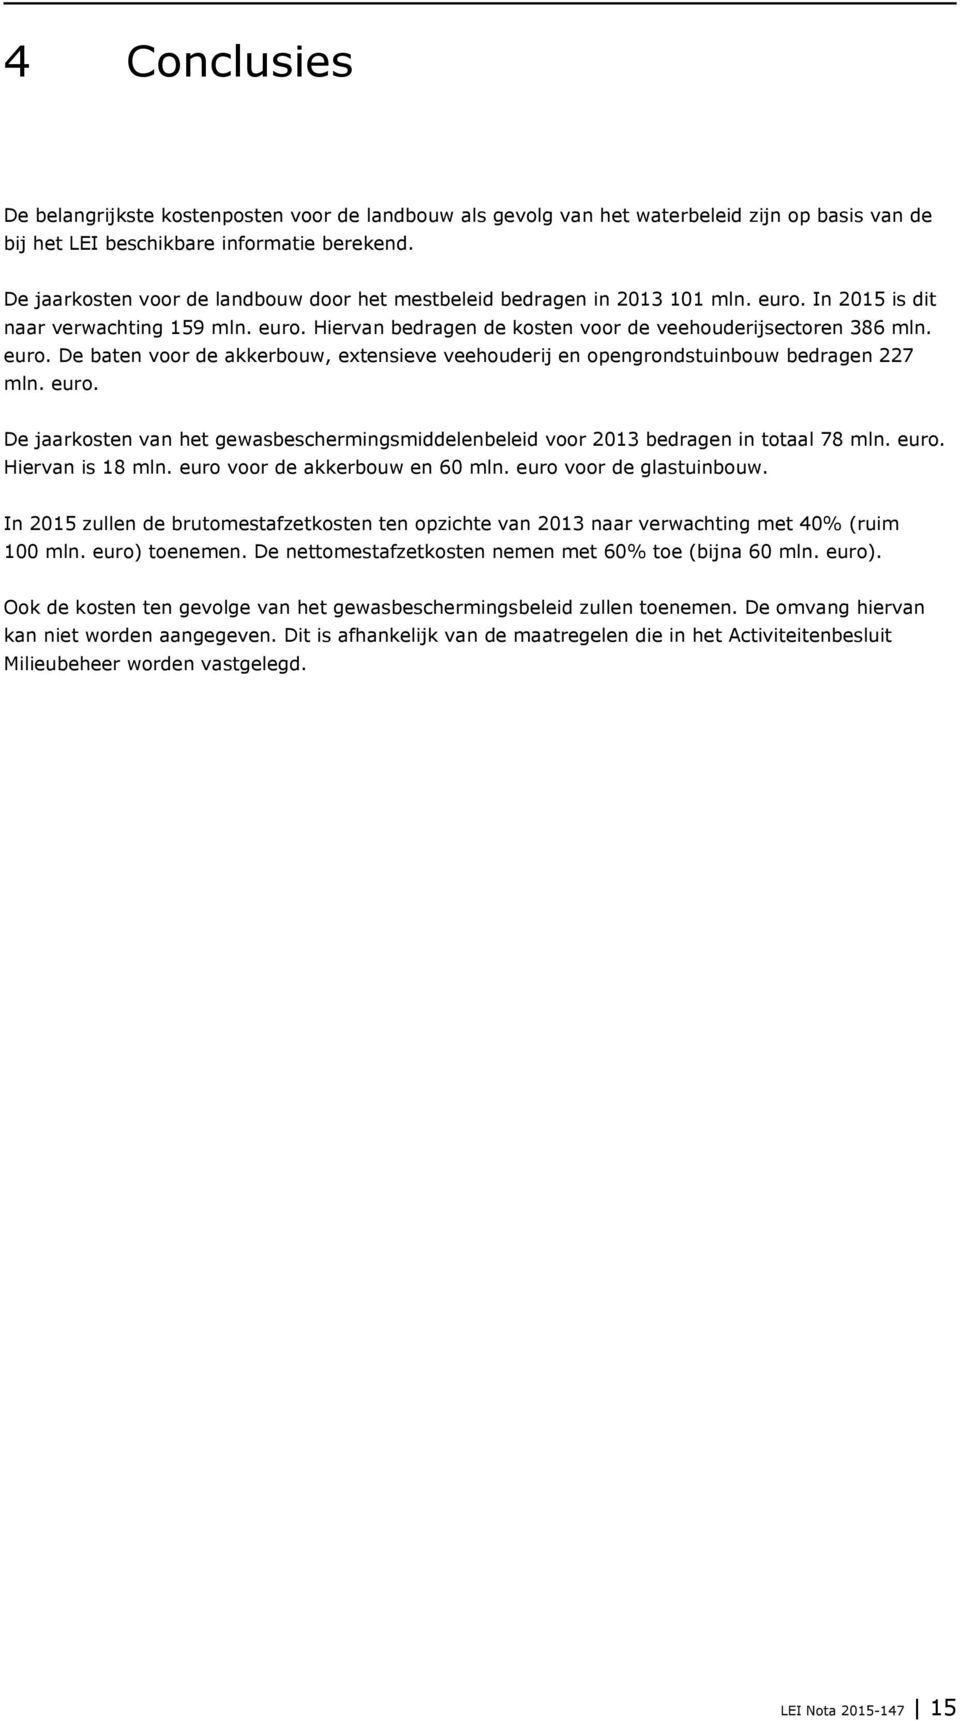 euro. De jaarkosten van het gewasbeschermingsmiddelenbeleid voor 2013 bedragen in totaal 78 mln. euro. Hiervan is 18 mln. euro voor de akkerbouw en 60 mln. euro voor de glastuinbouw.